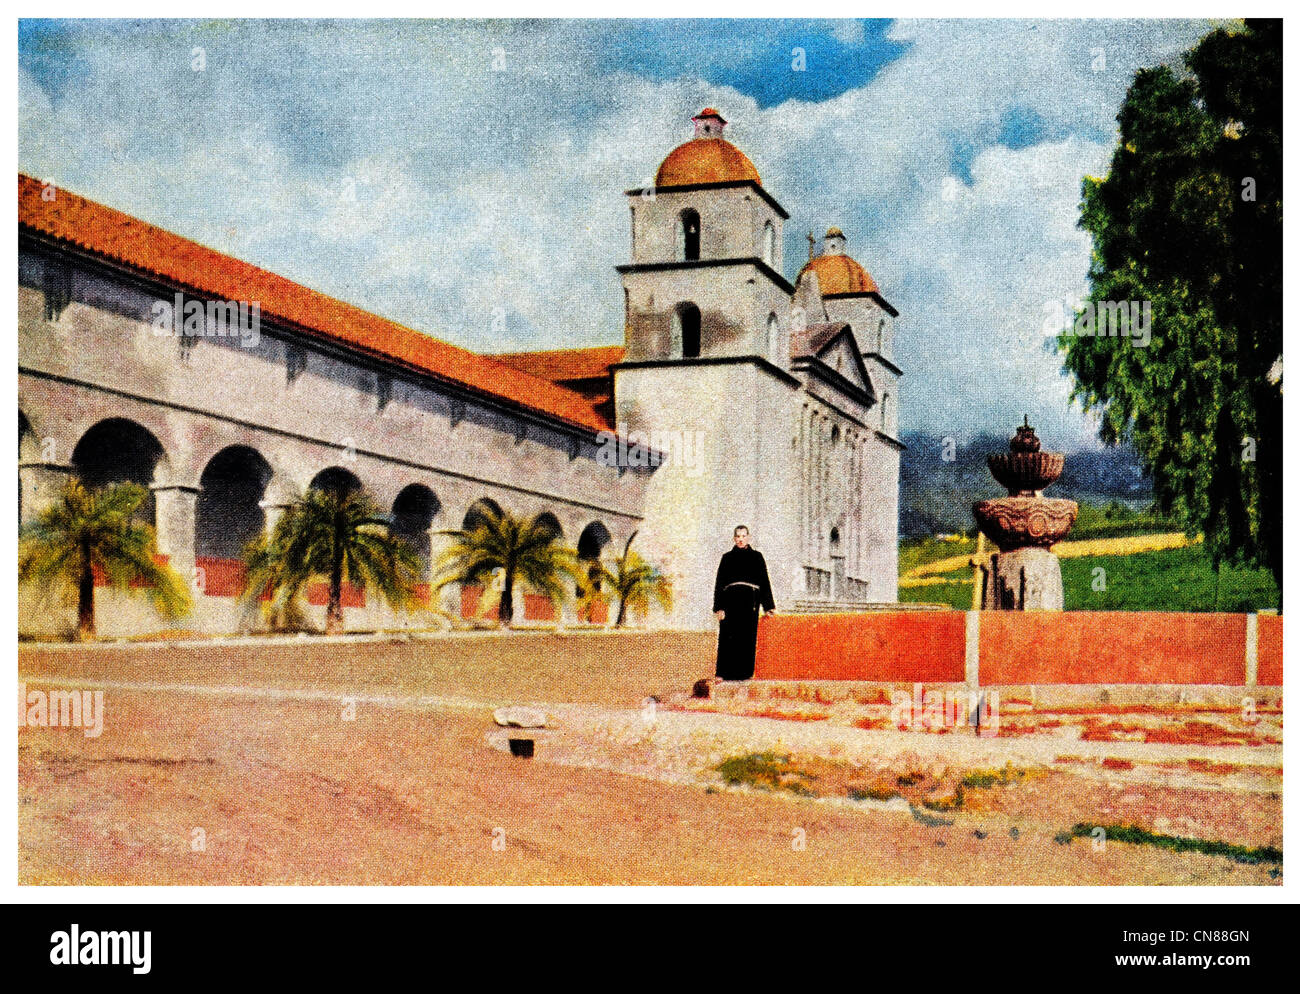 Erste veröffentlichte 1916 alte Mission Santa Barbara Kalifornien USA Stockfoto